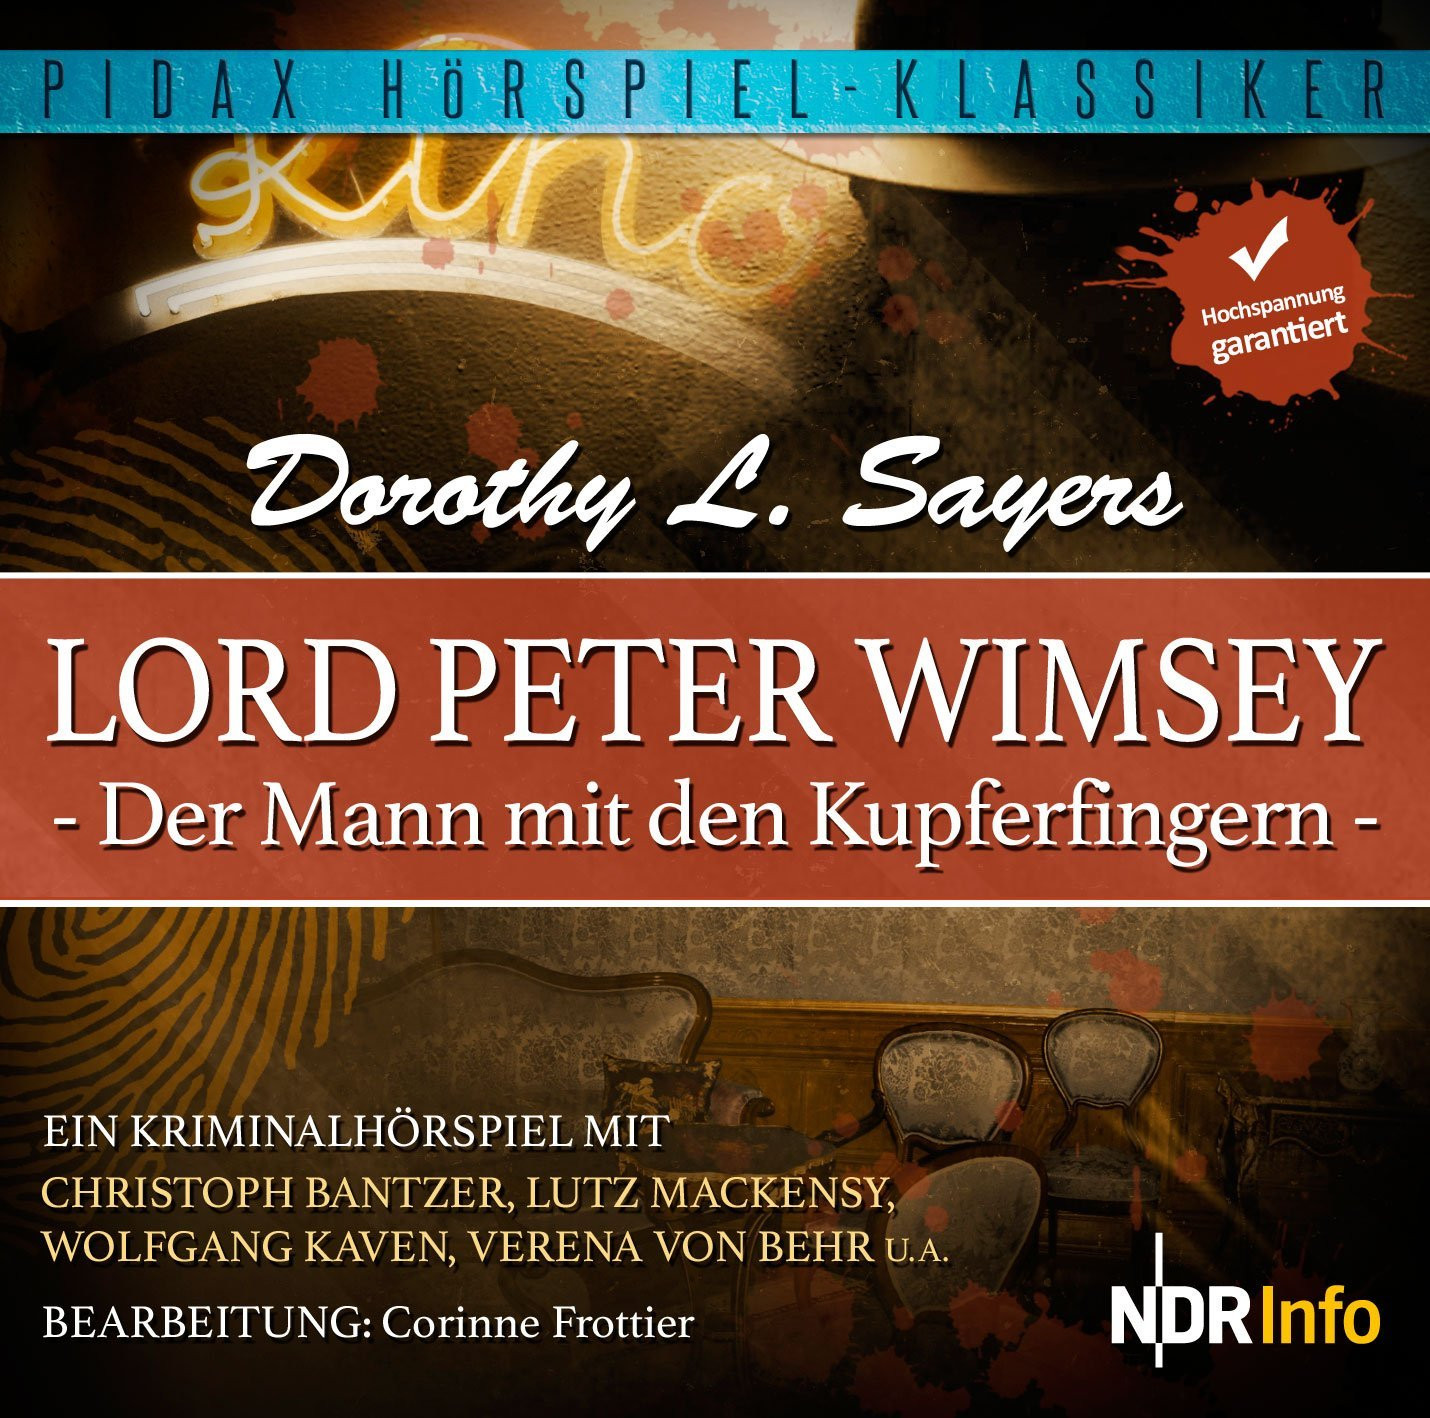 Pidax Hörspiel Klassiker - Lord Peter Wimsey - Der Mann mit den Kupferfingern